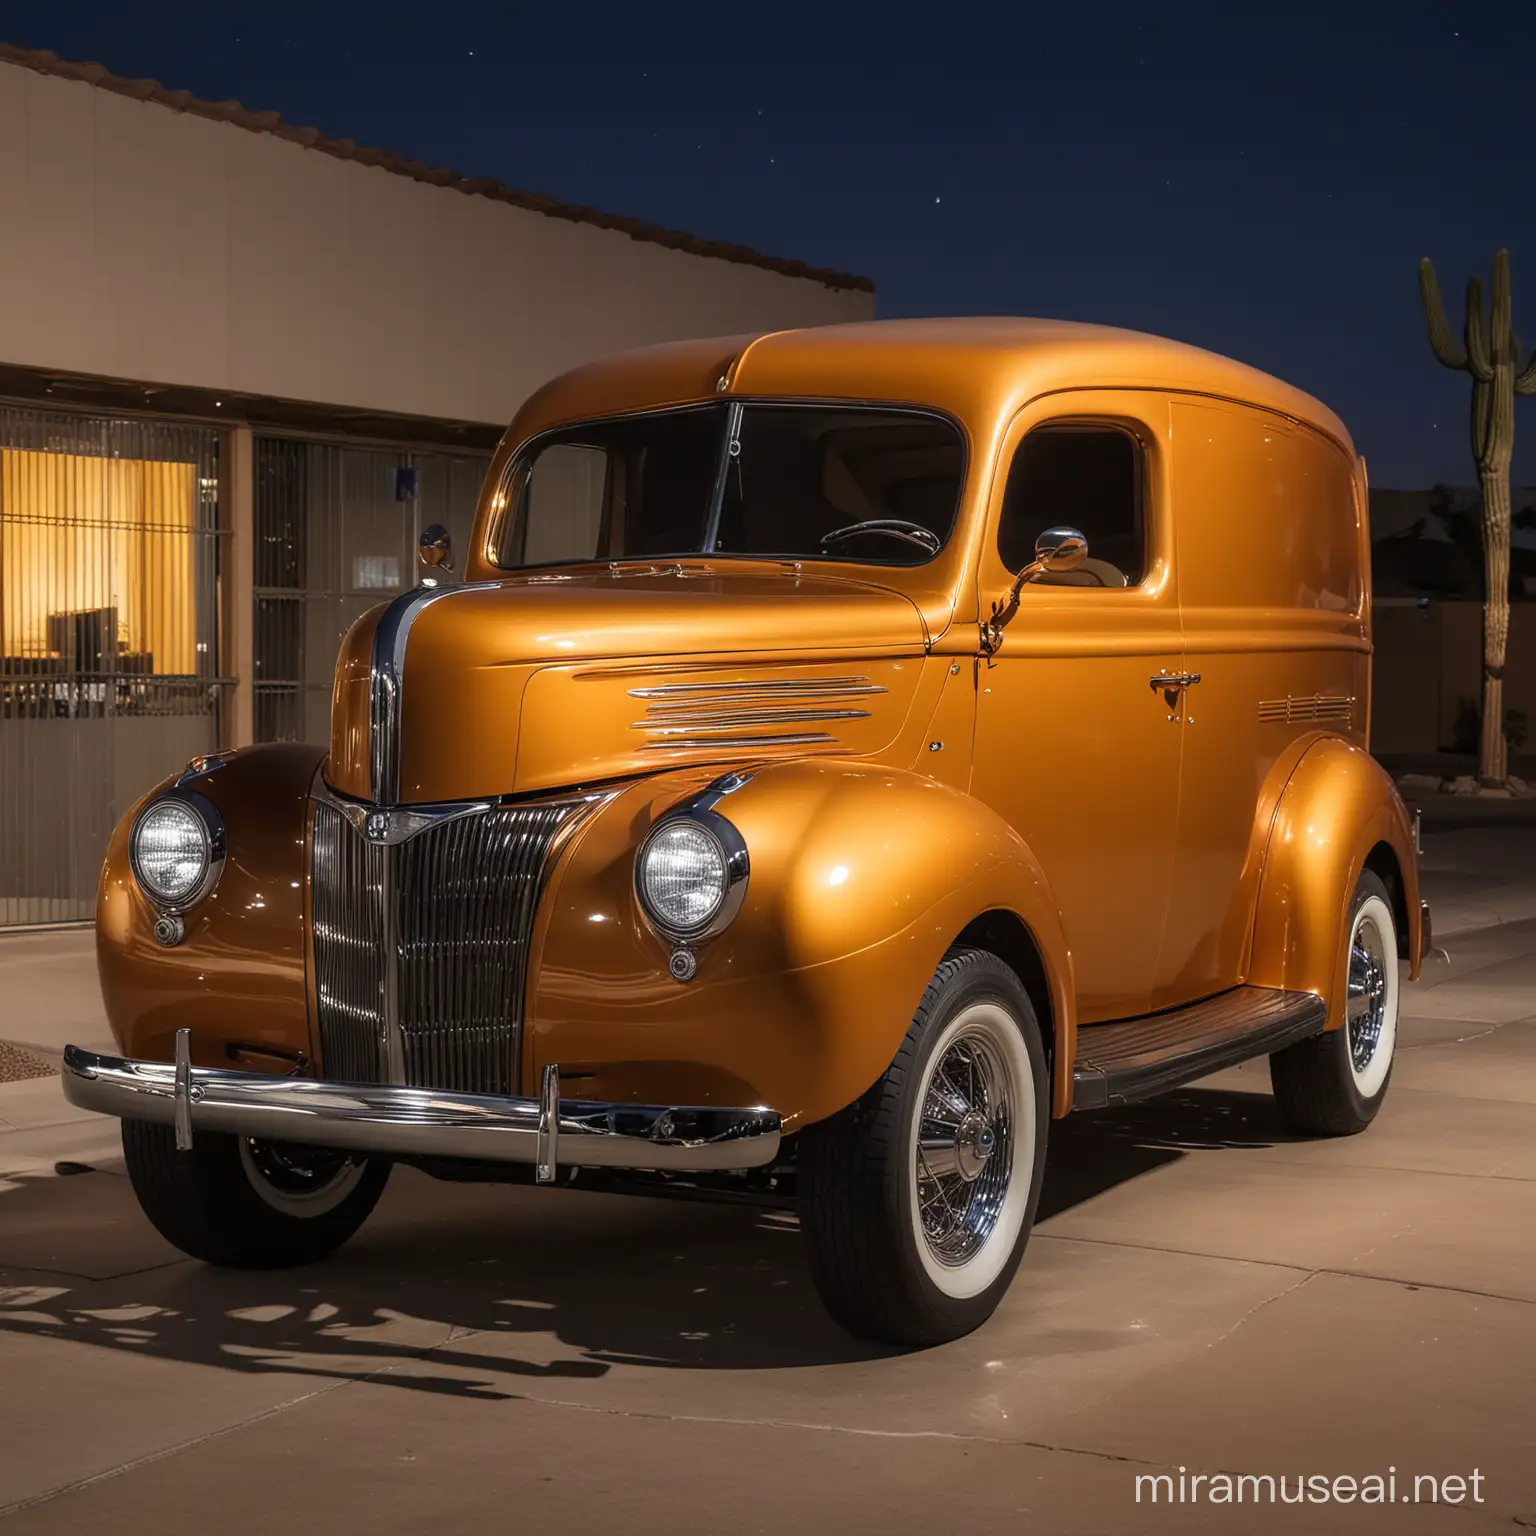 Camioneta Ford Panel 1941, hot rod sport street, cauchos anchos rines Cragar, color ambar metálico, estacionada en una calle de Phoenix Arizona, a l9 de la noche, las luces blancas de los postes inciden sobre la camioneta que luce bellisima.